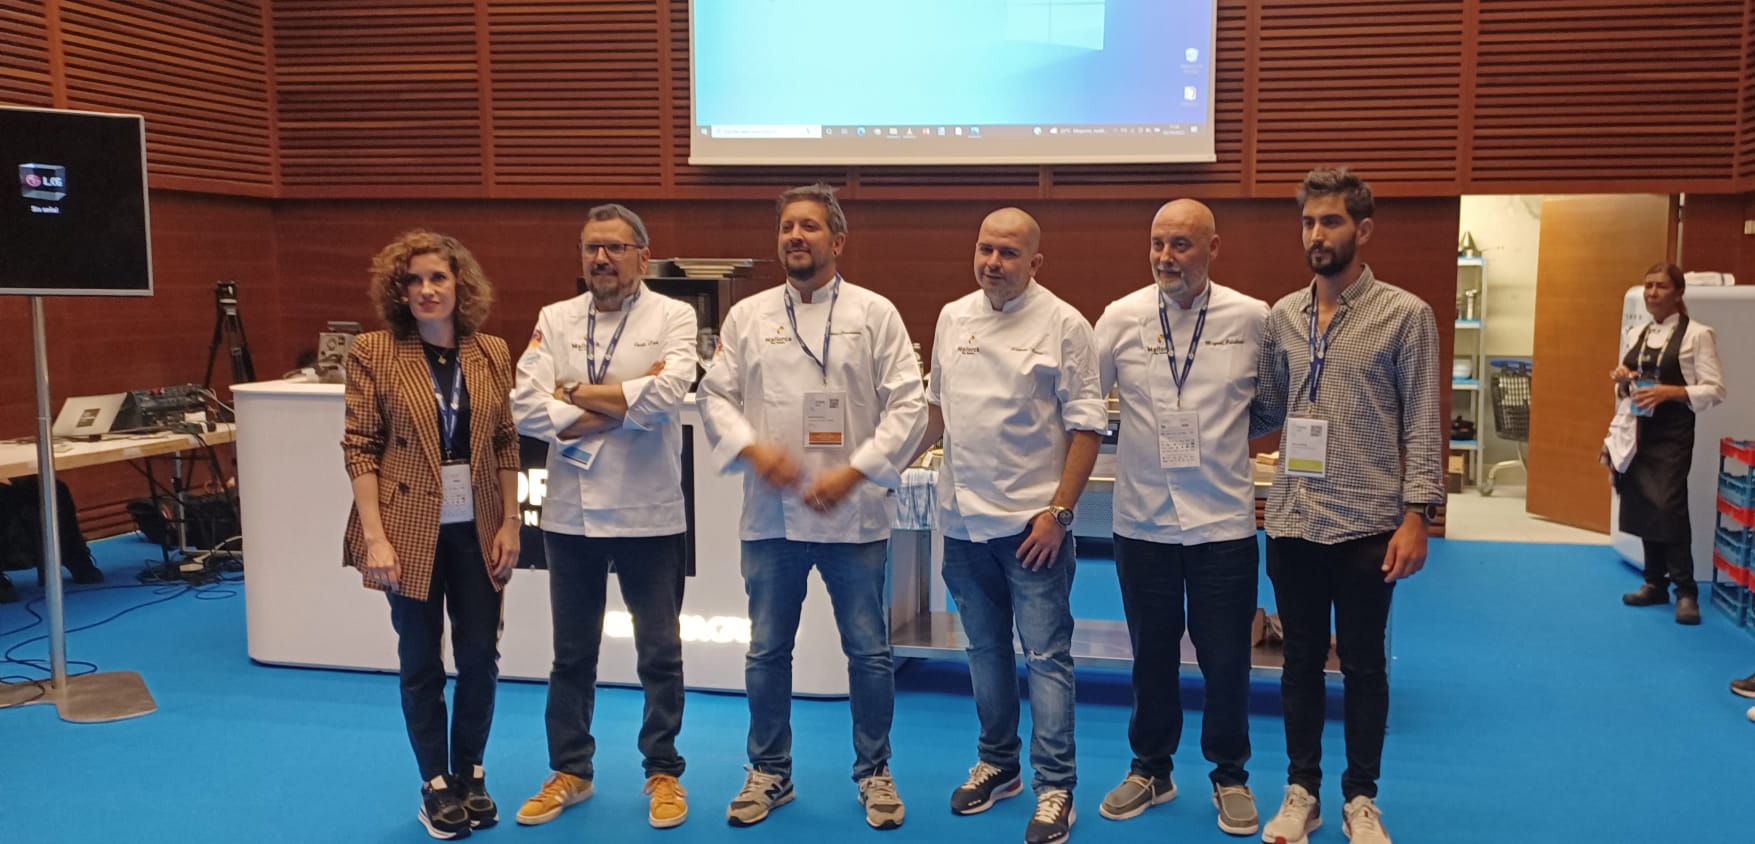 La delegación de cocineros de la Asociación de cocineros de Balears en San Sebastian Gastronomika.